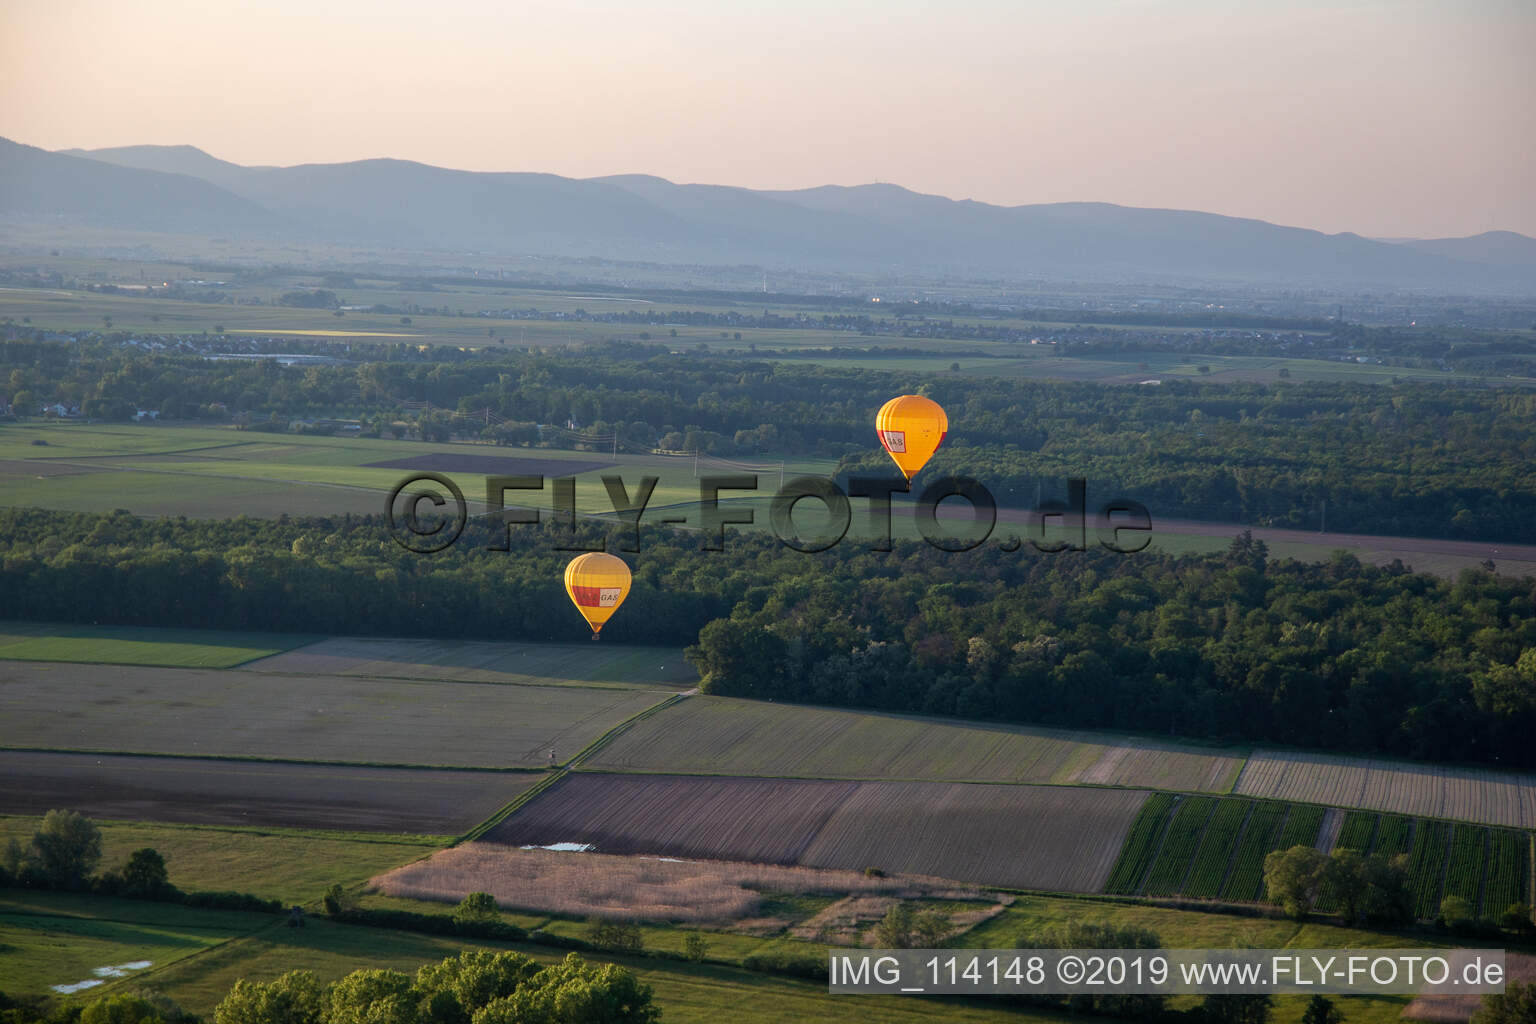 Pfalzgas Zwillingsballone in Kandel im Bundesland Rheinland-Pfalz, Deutschland